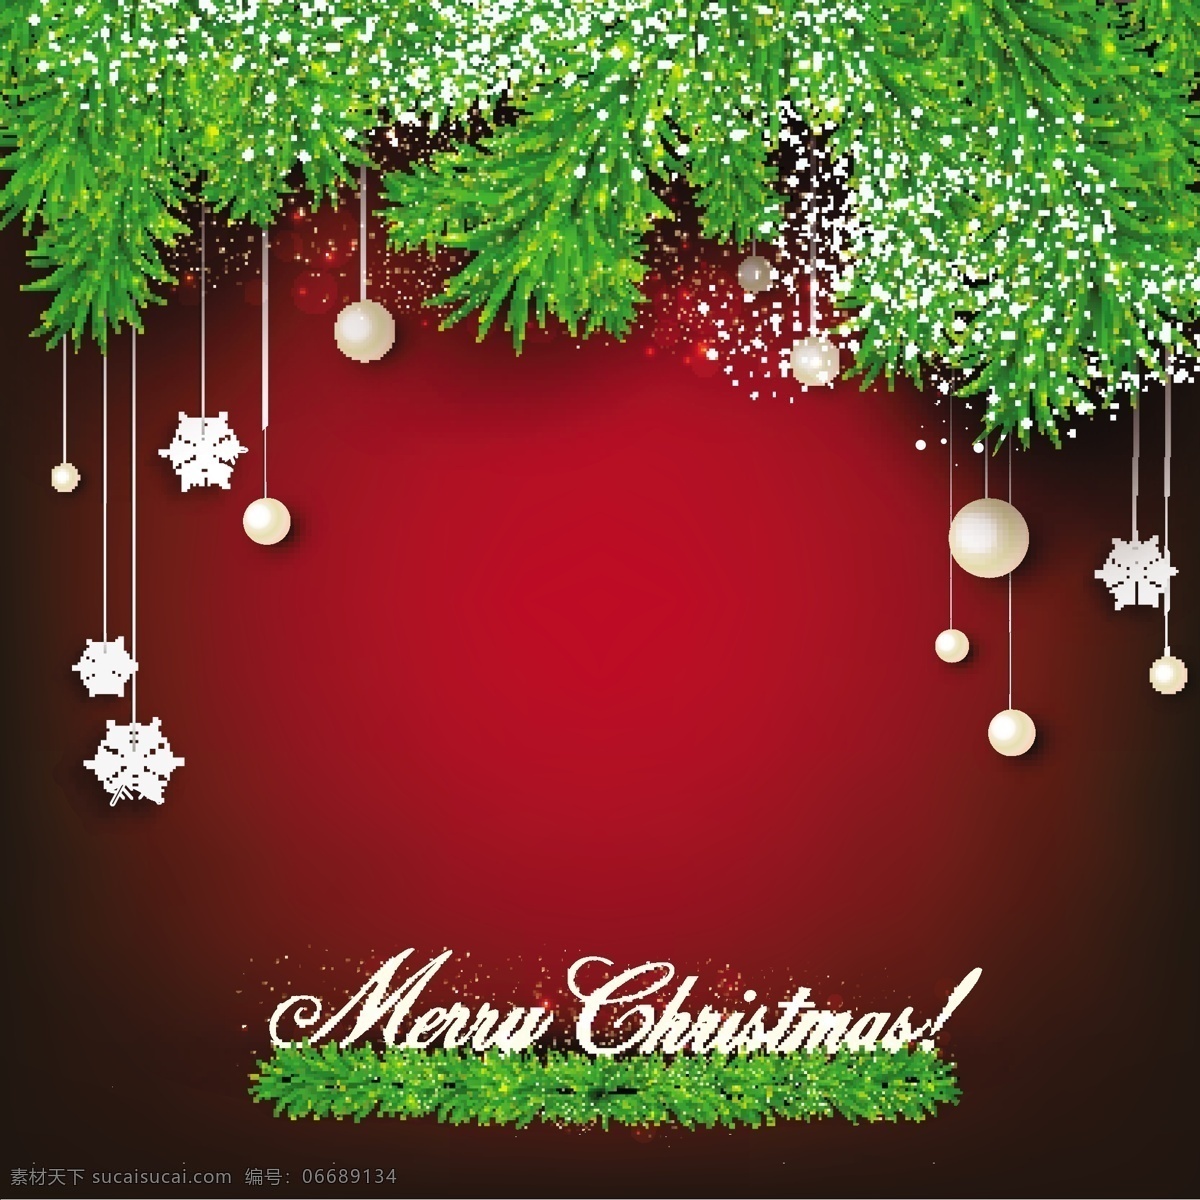 红色 松枝 圣诞 背景图片 焐 芍 尘 笆 噶 克 夭 节日素材 其他节日